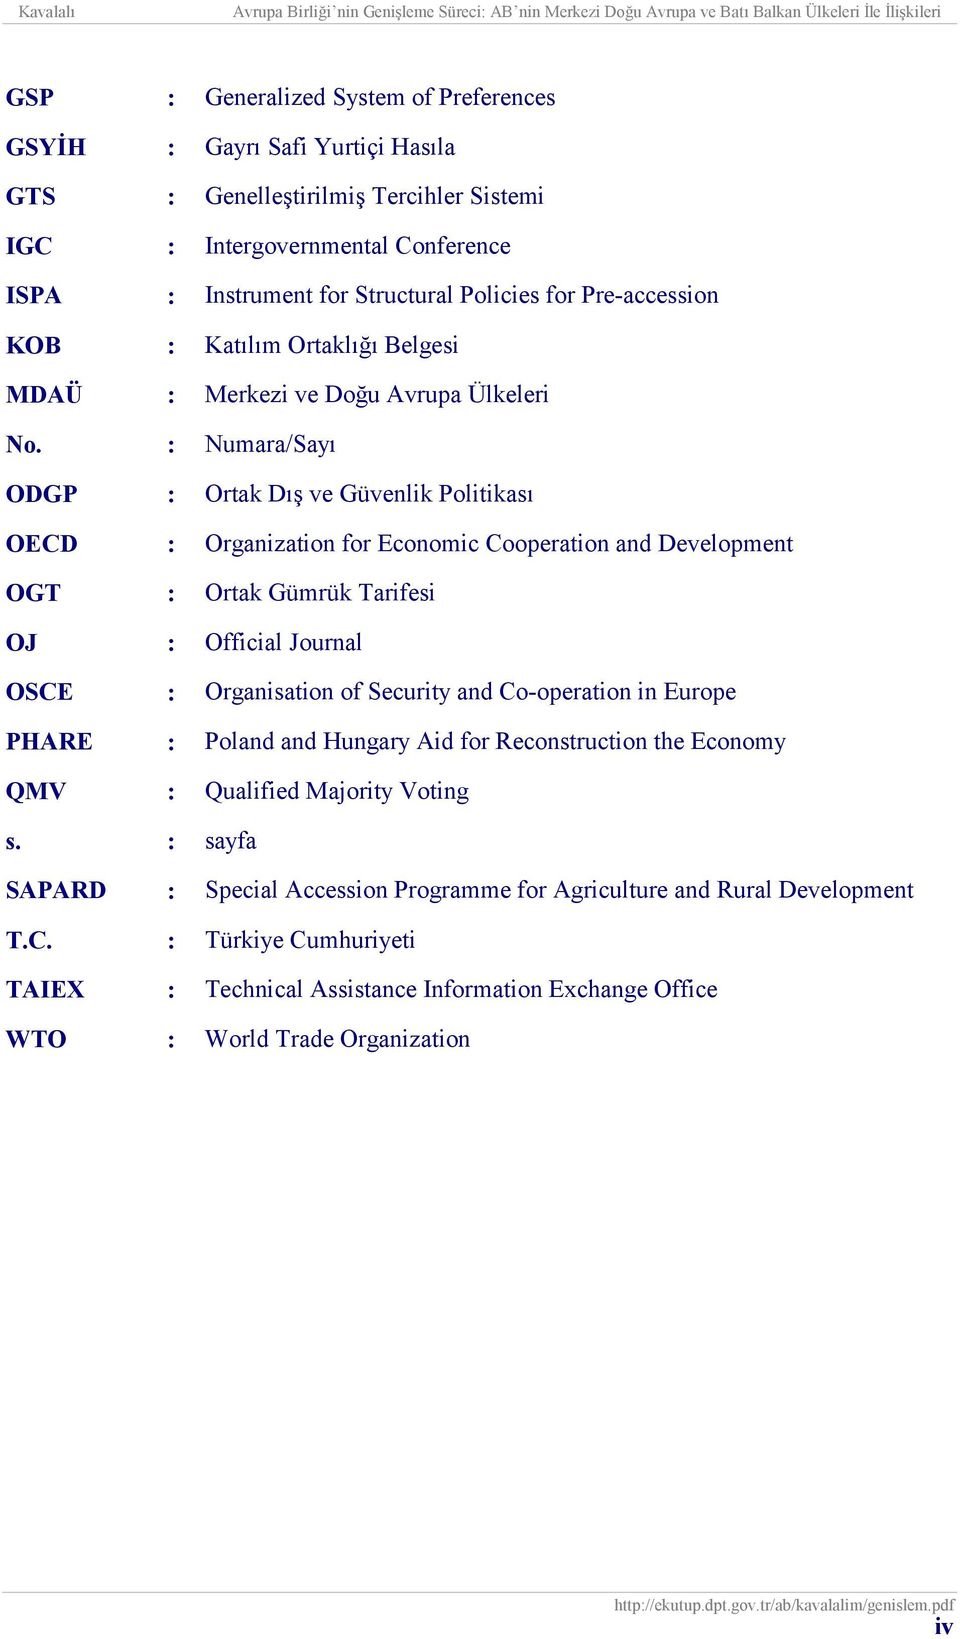 : Numara/Sayı ODGP : Ortak Dış ve Güvenlik Politikası OECD : Organization for Economic Cooperation and Development OGT : Ortak Gümrük Tarifesi OJ : Official Journal OSCE : Organisation of Security